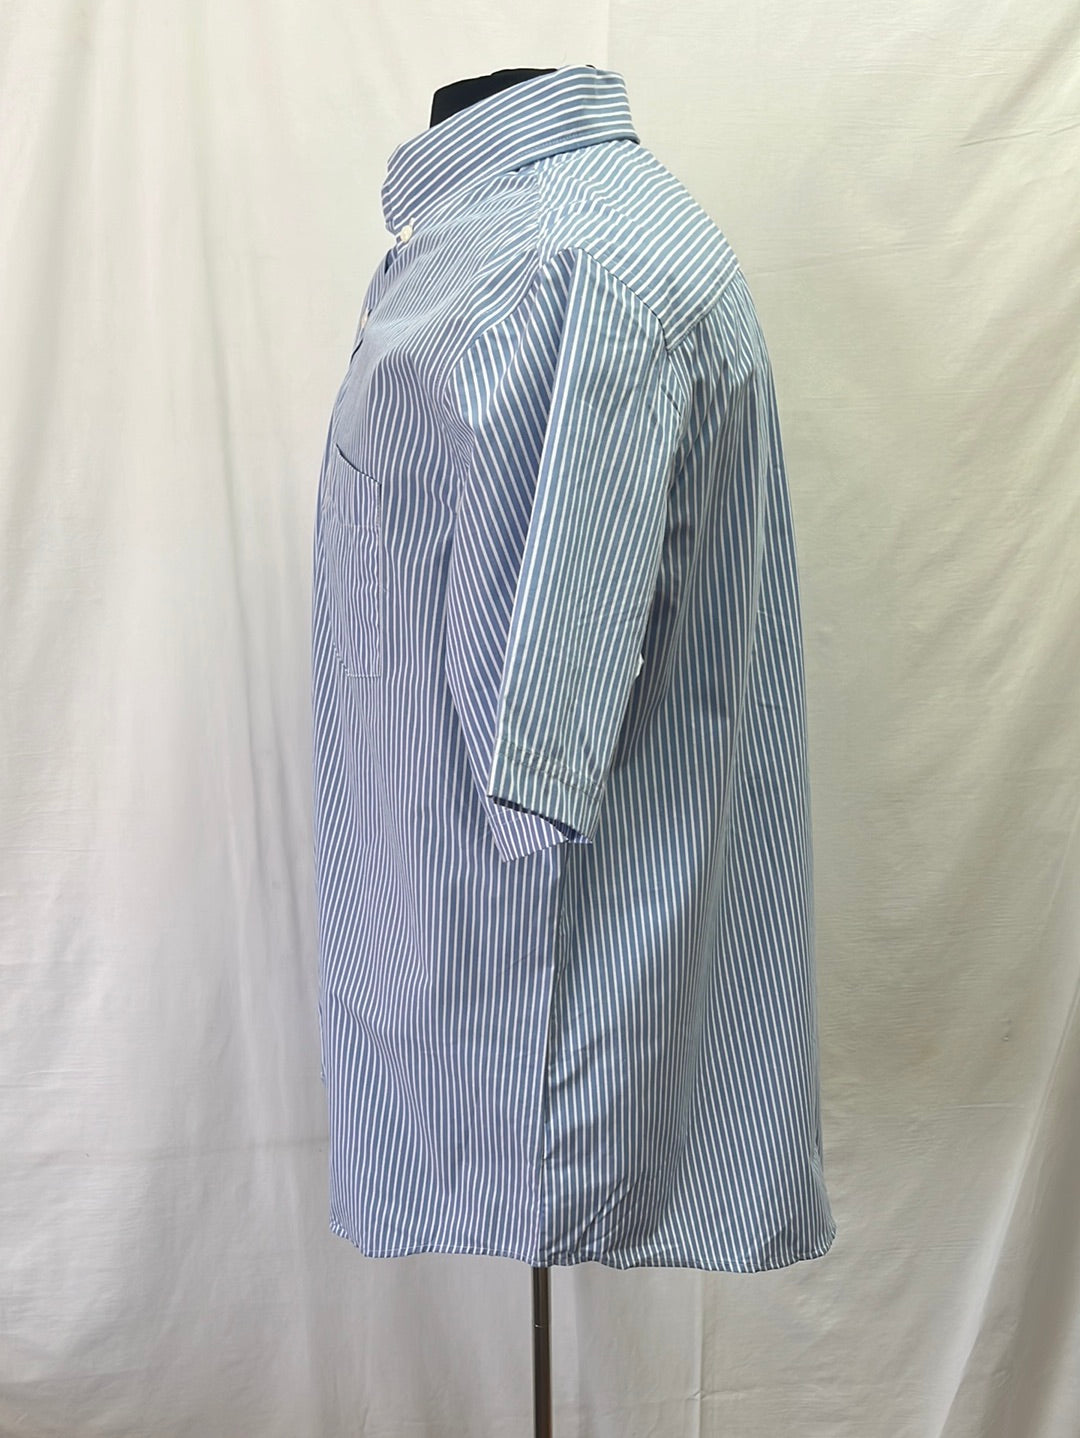 Basic Button Down Striped Short Sleeve Dress Shirt